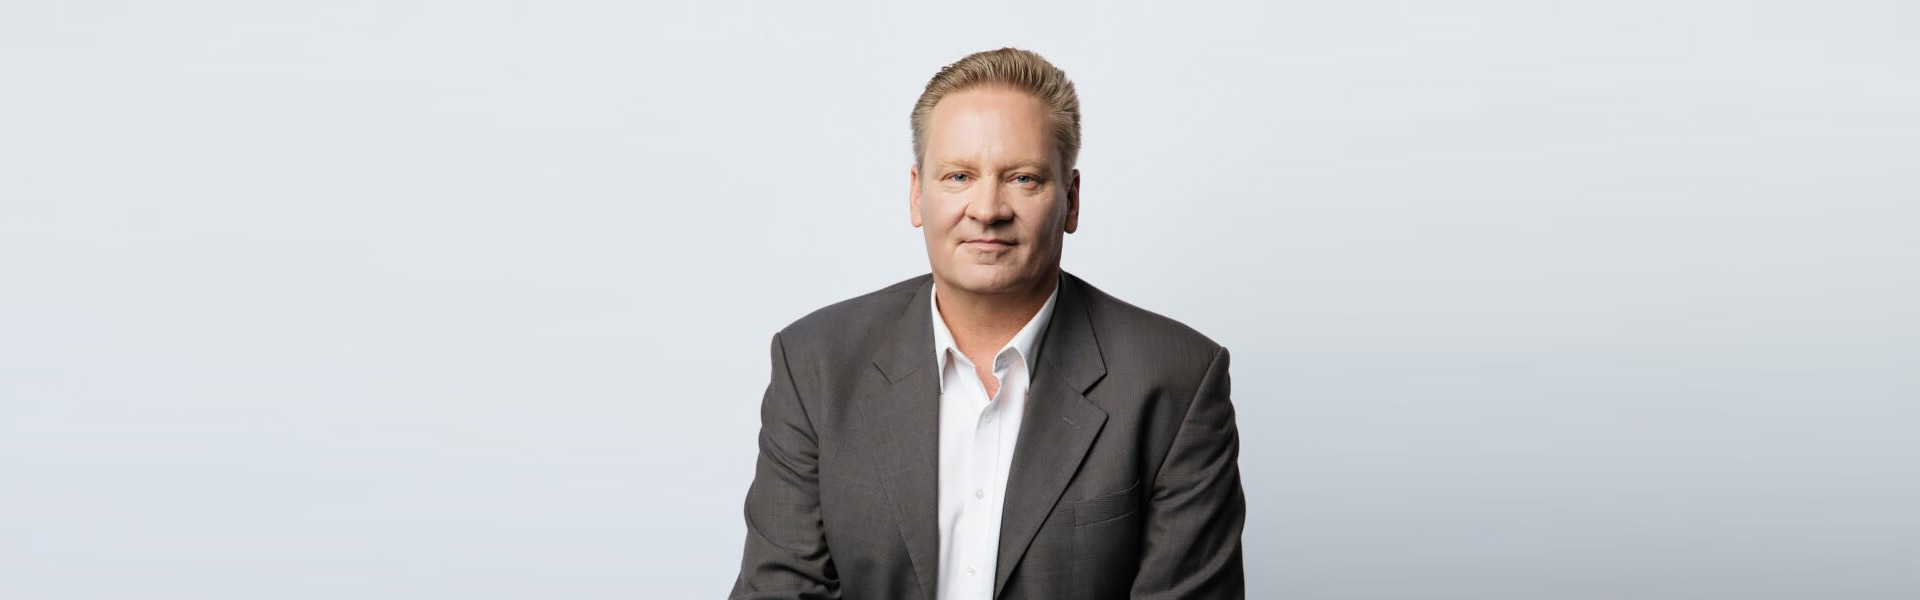 Michael Joos, CEO